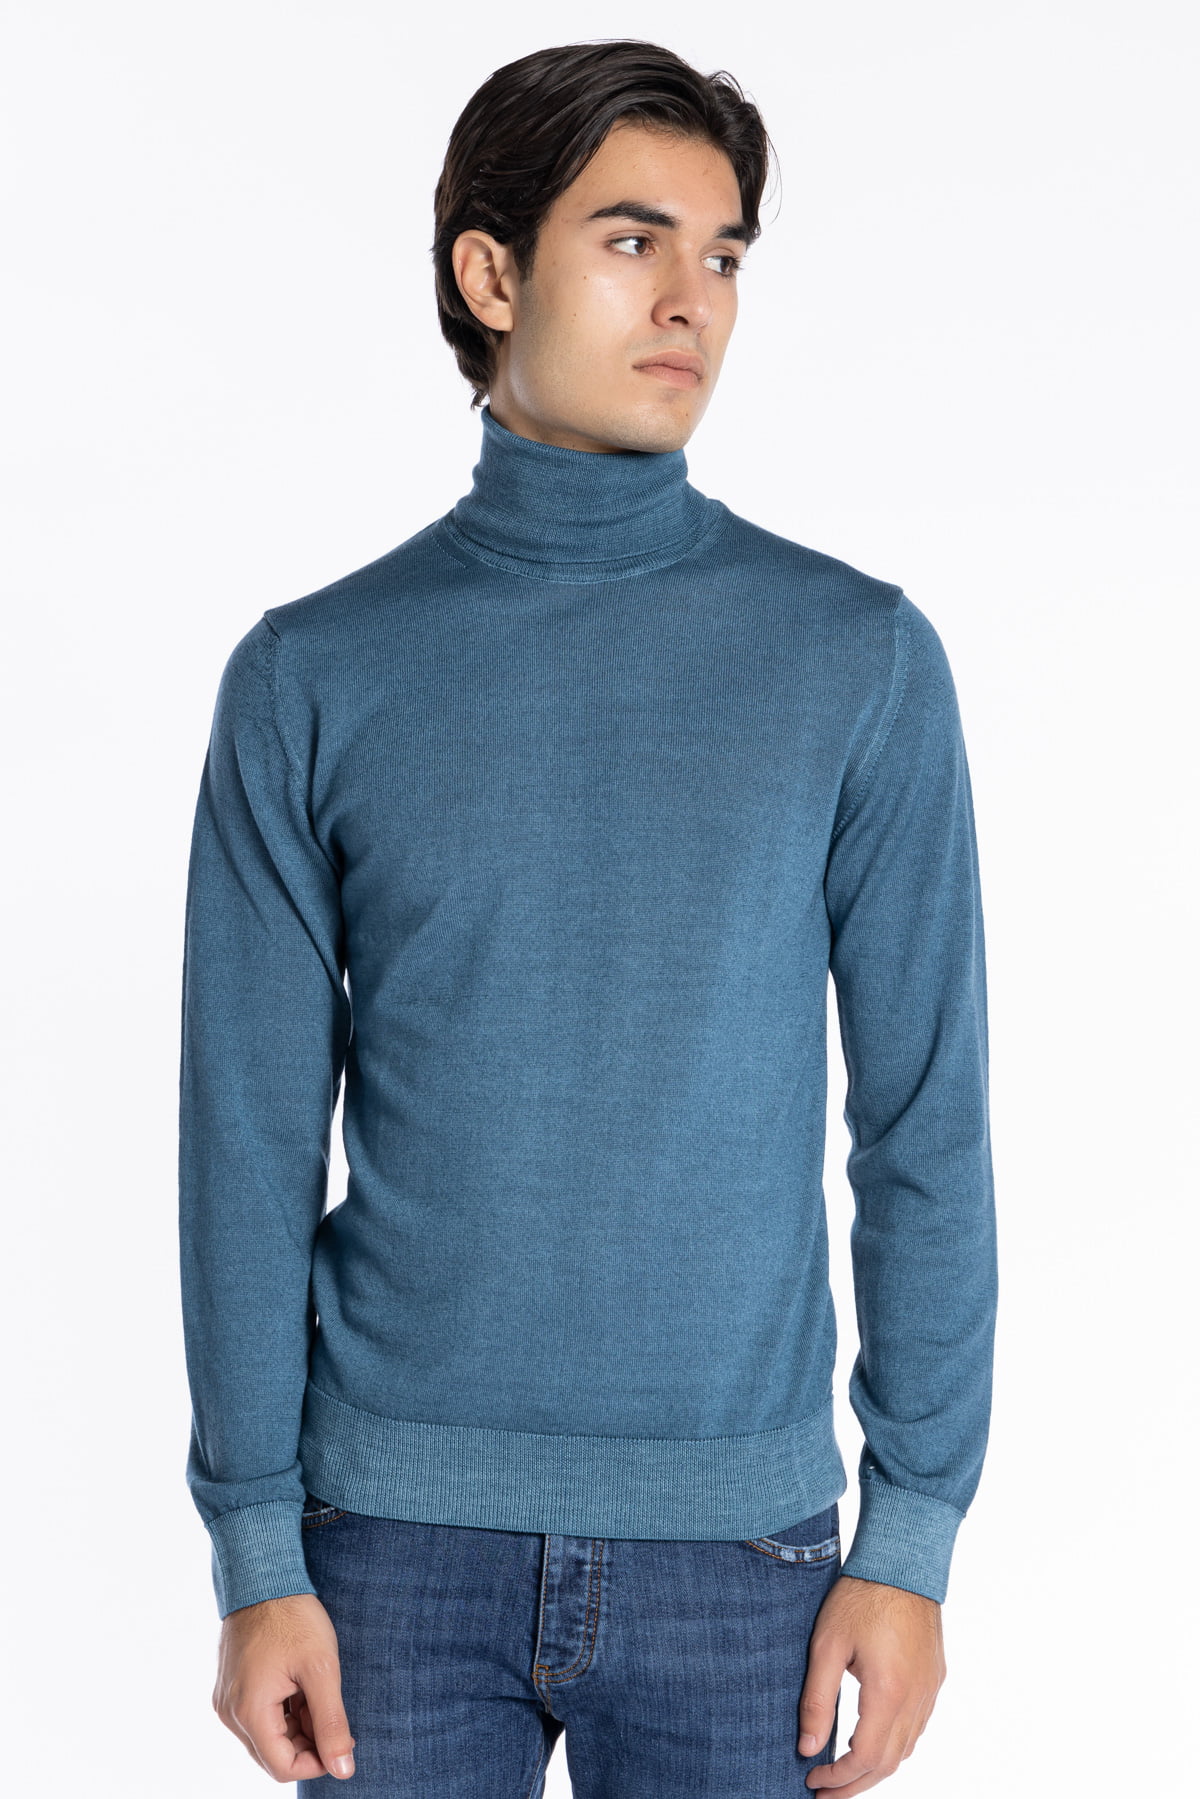 Maglione da uomo collo alto color ottanio lana merinos effetto stone wash maniche lunghe.